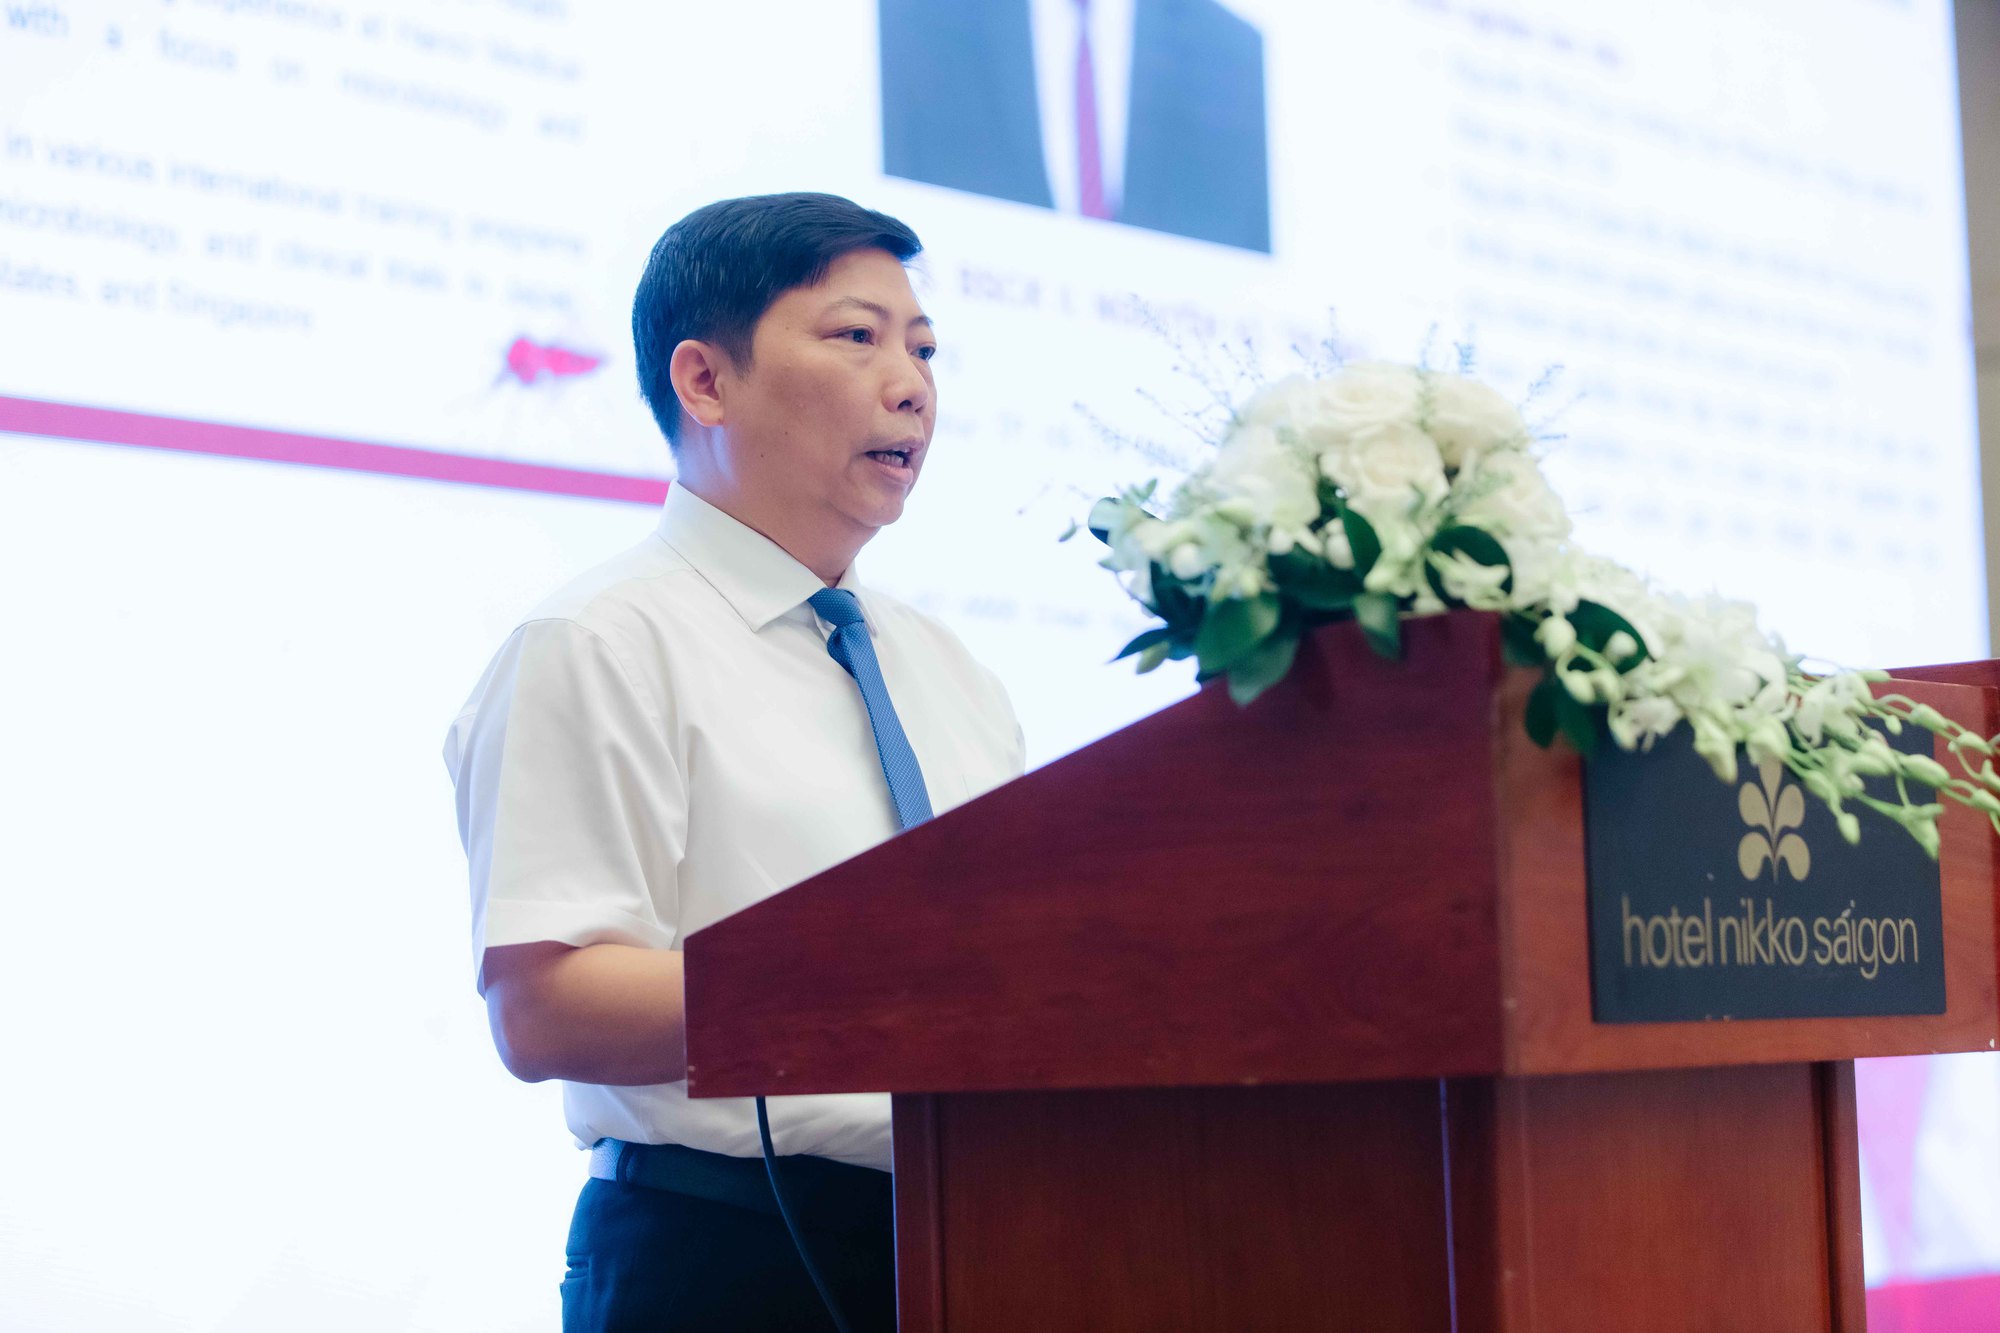  PGS.TS Nguyễn Vũ Trung, Viện trưởng Viện Pasteur TP Hồ Chí Minh cho biết, sốt xuất huyết dengue do 4 tuýp huyết thanh của virus dengue gây ra. Nhiễm virus dengue thứ phát có thể làm tăng nguy cơ sốt xuất huyết nghiêm trọng hơn.